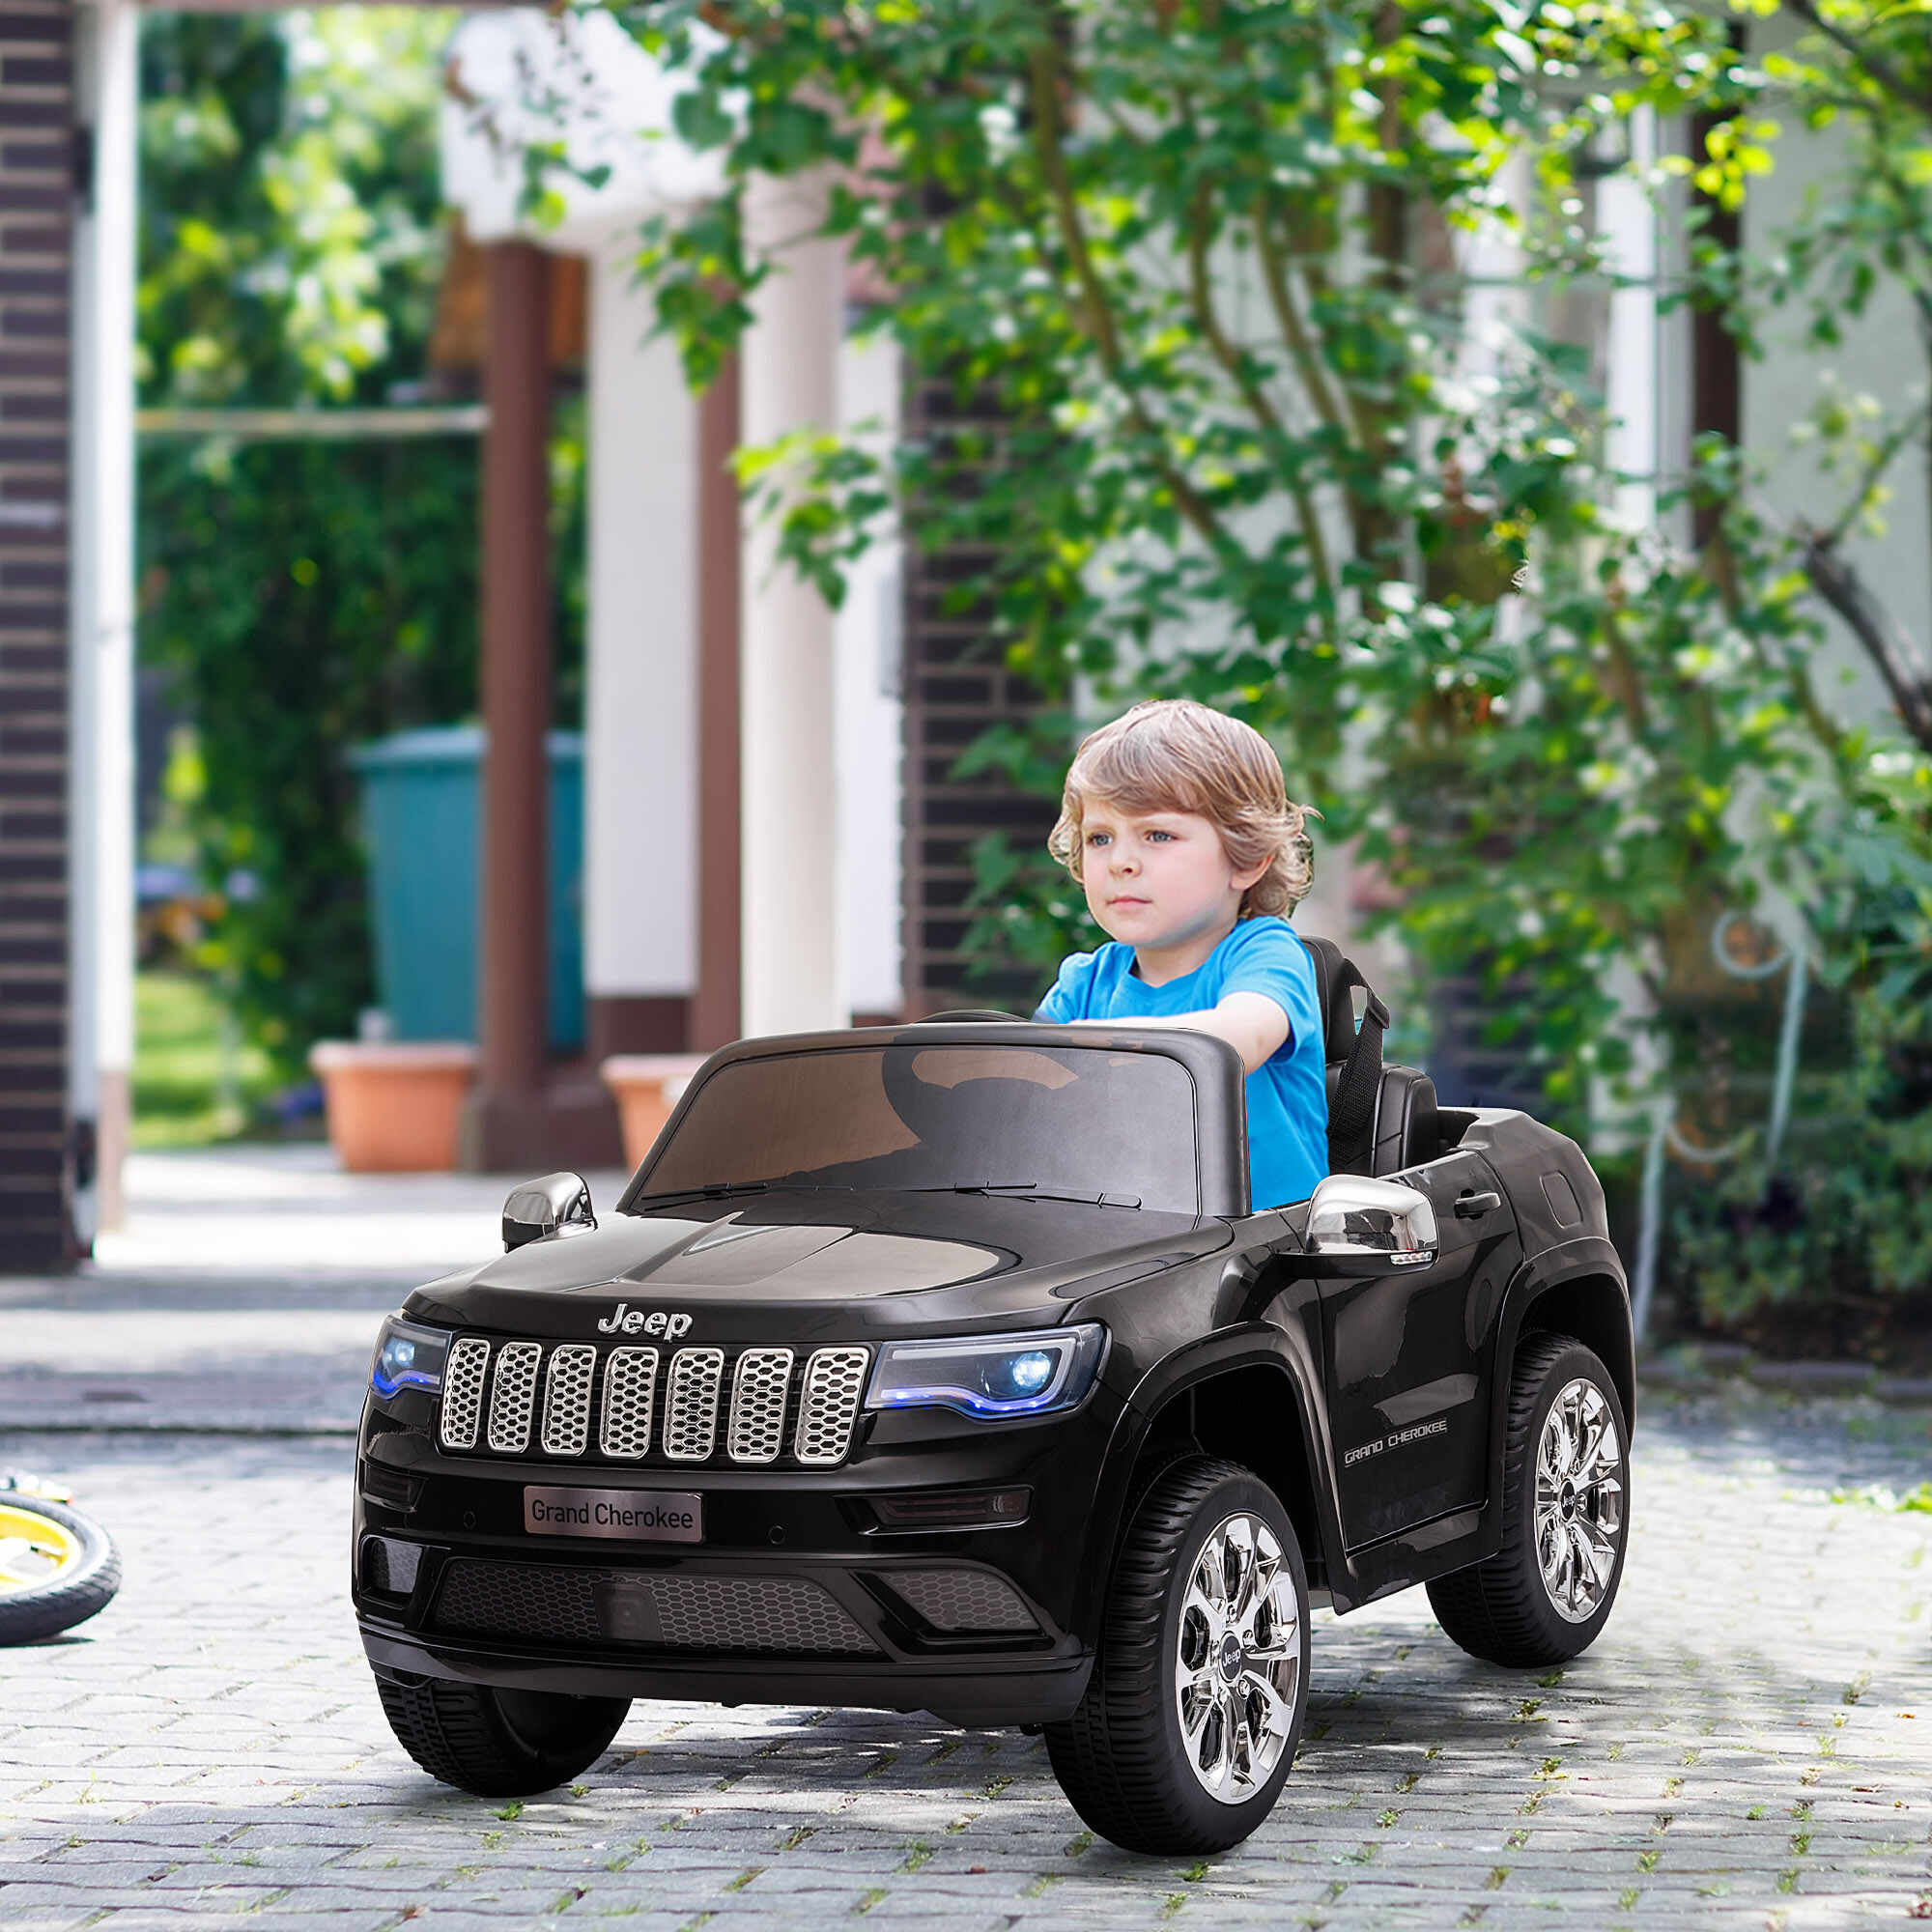 HOMCOM Masina electrica Jeep pentru Copii 12V, Conducere Manuala si cu Telecomanda Viteza 0-3km/h, 114x76x58cm, Negru